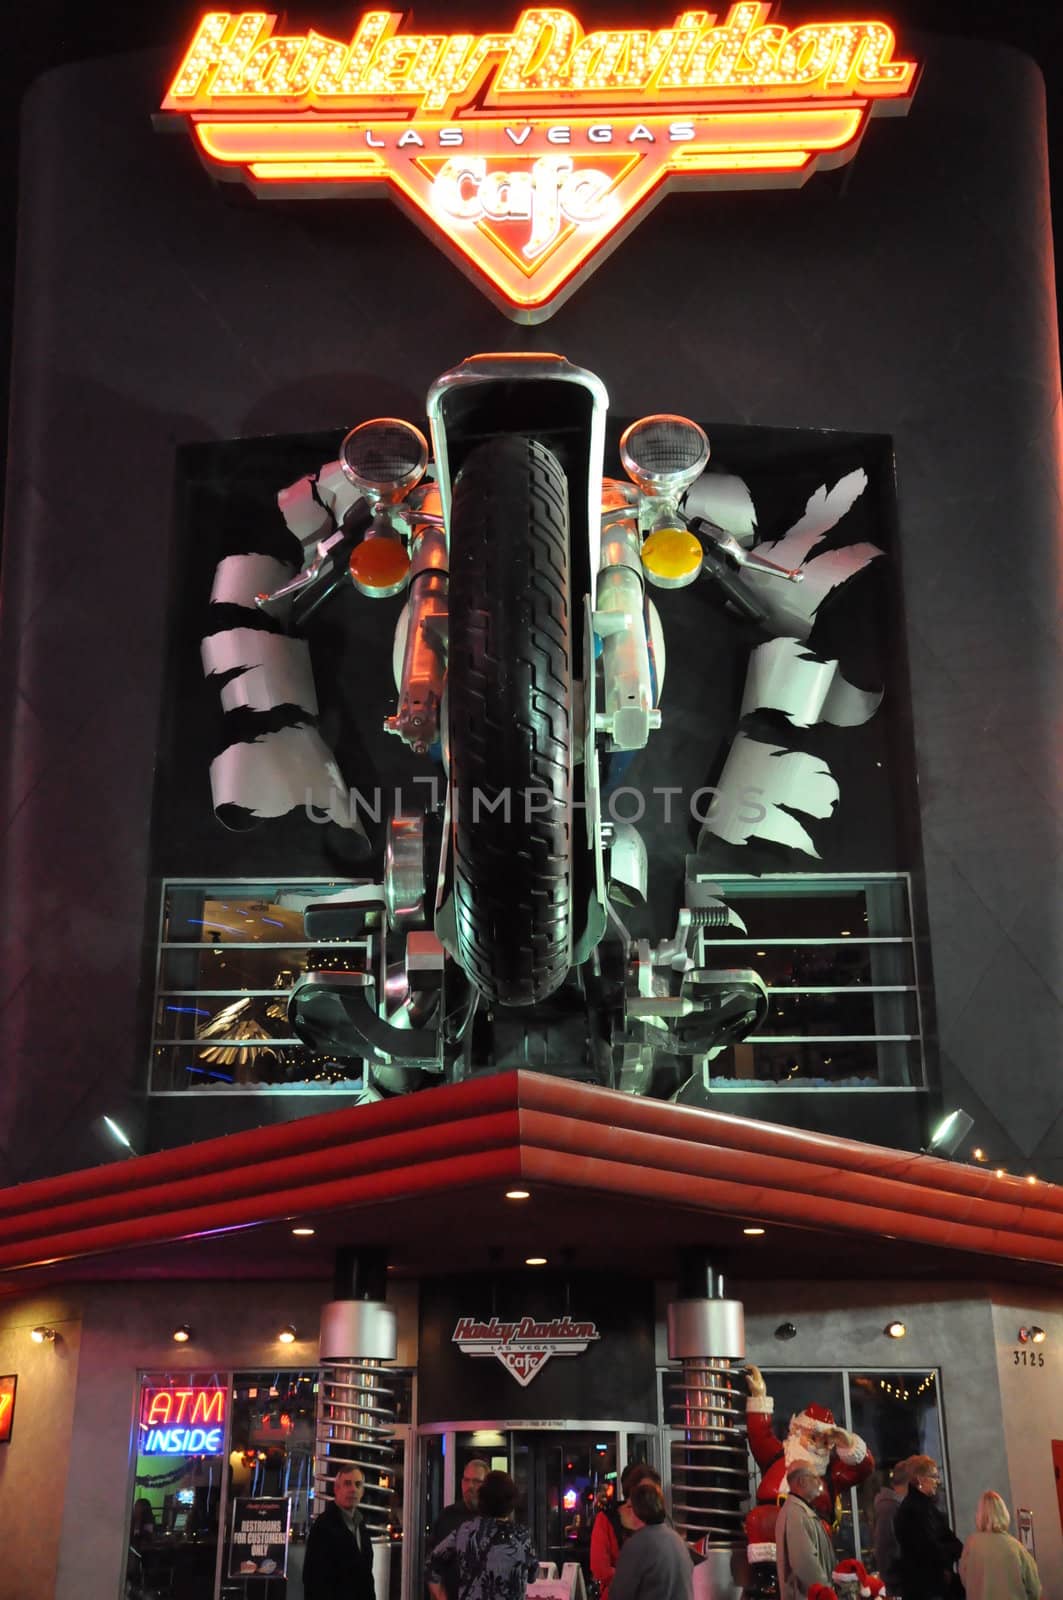 Harley Davidson Cafe in Las Vegas, Nevada